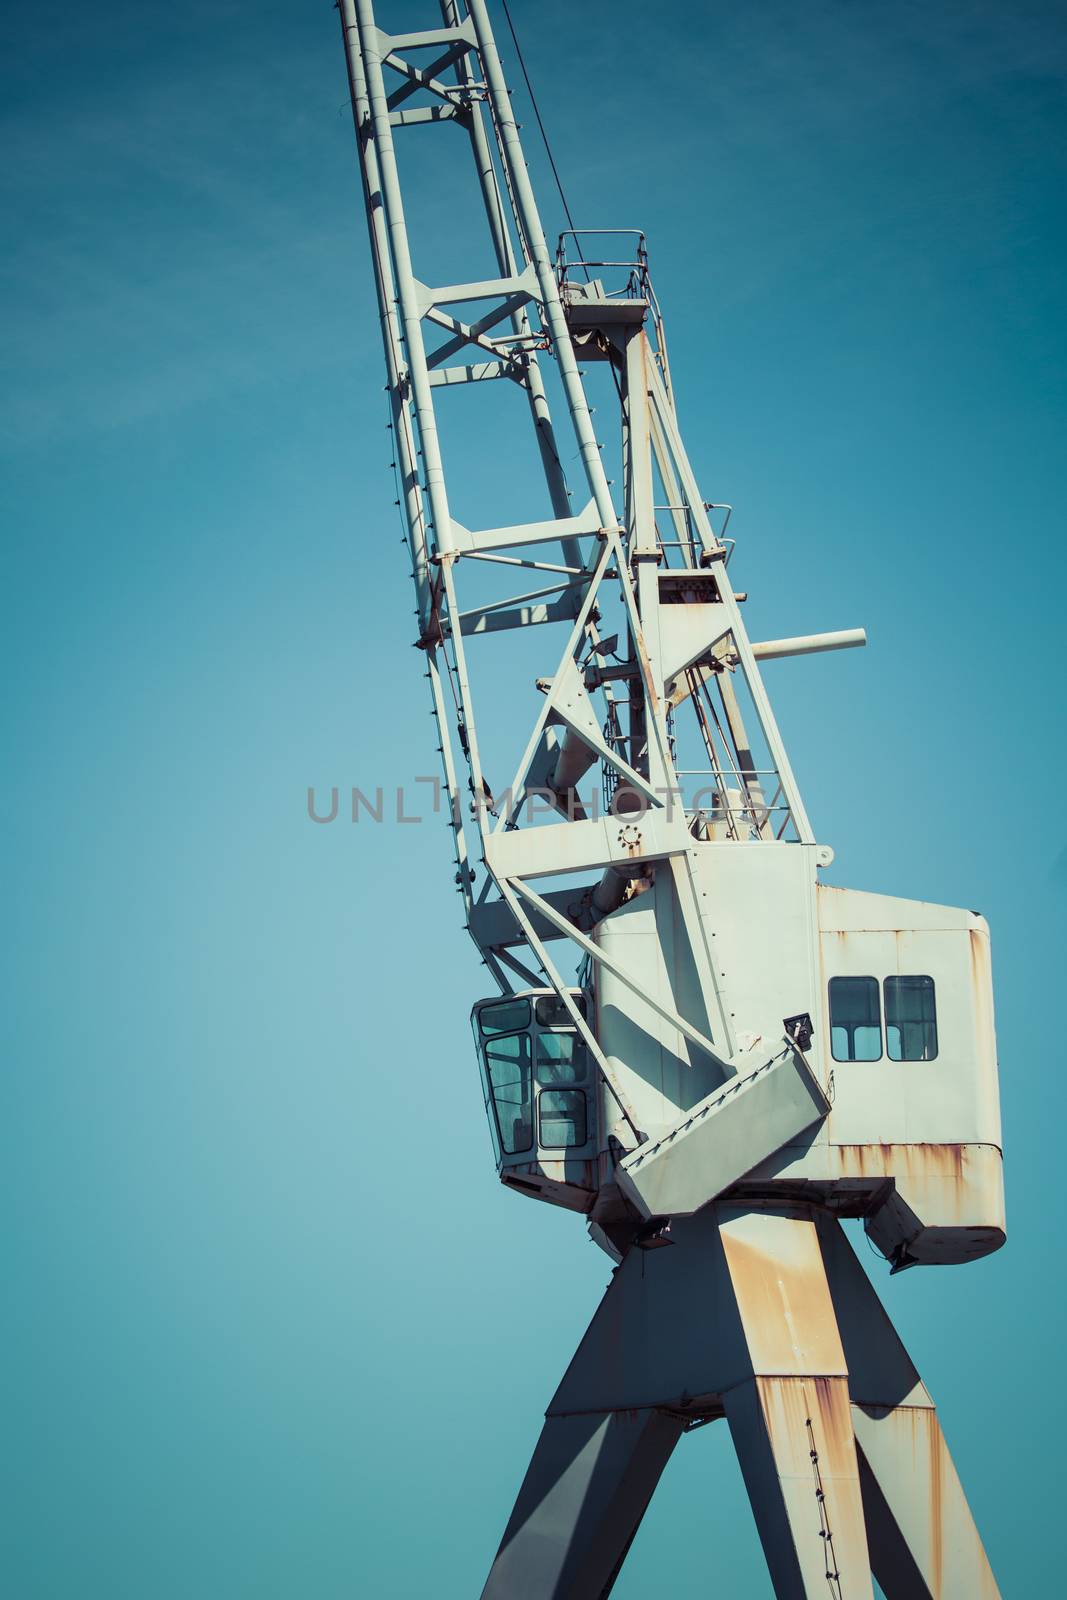 Dockside crane,Wellington harbour New Zealand.